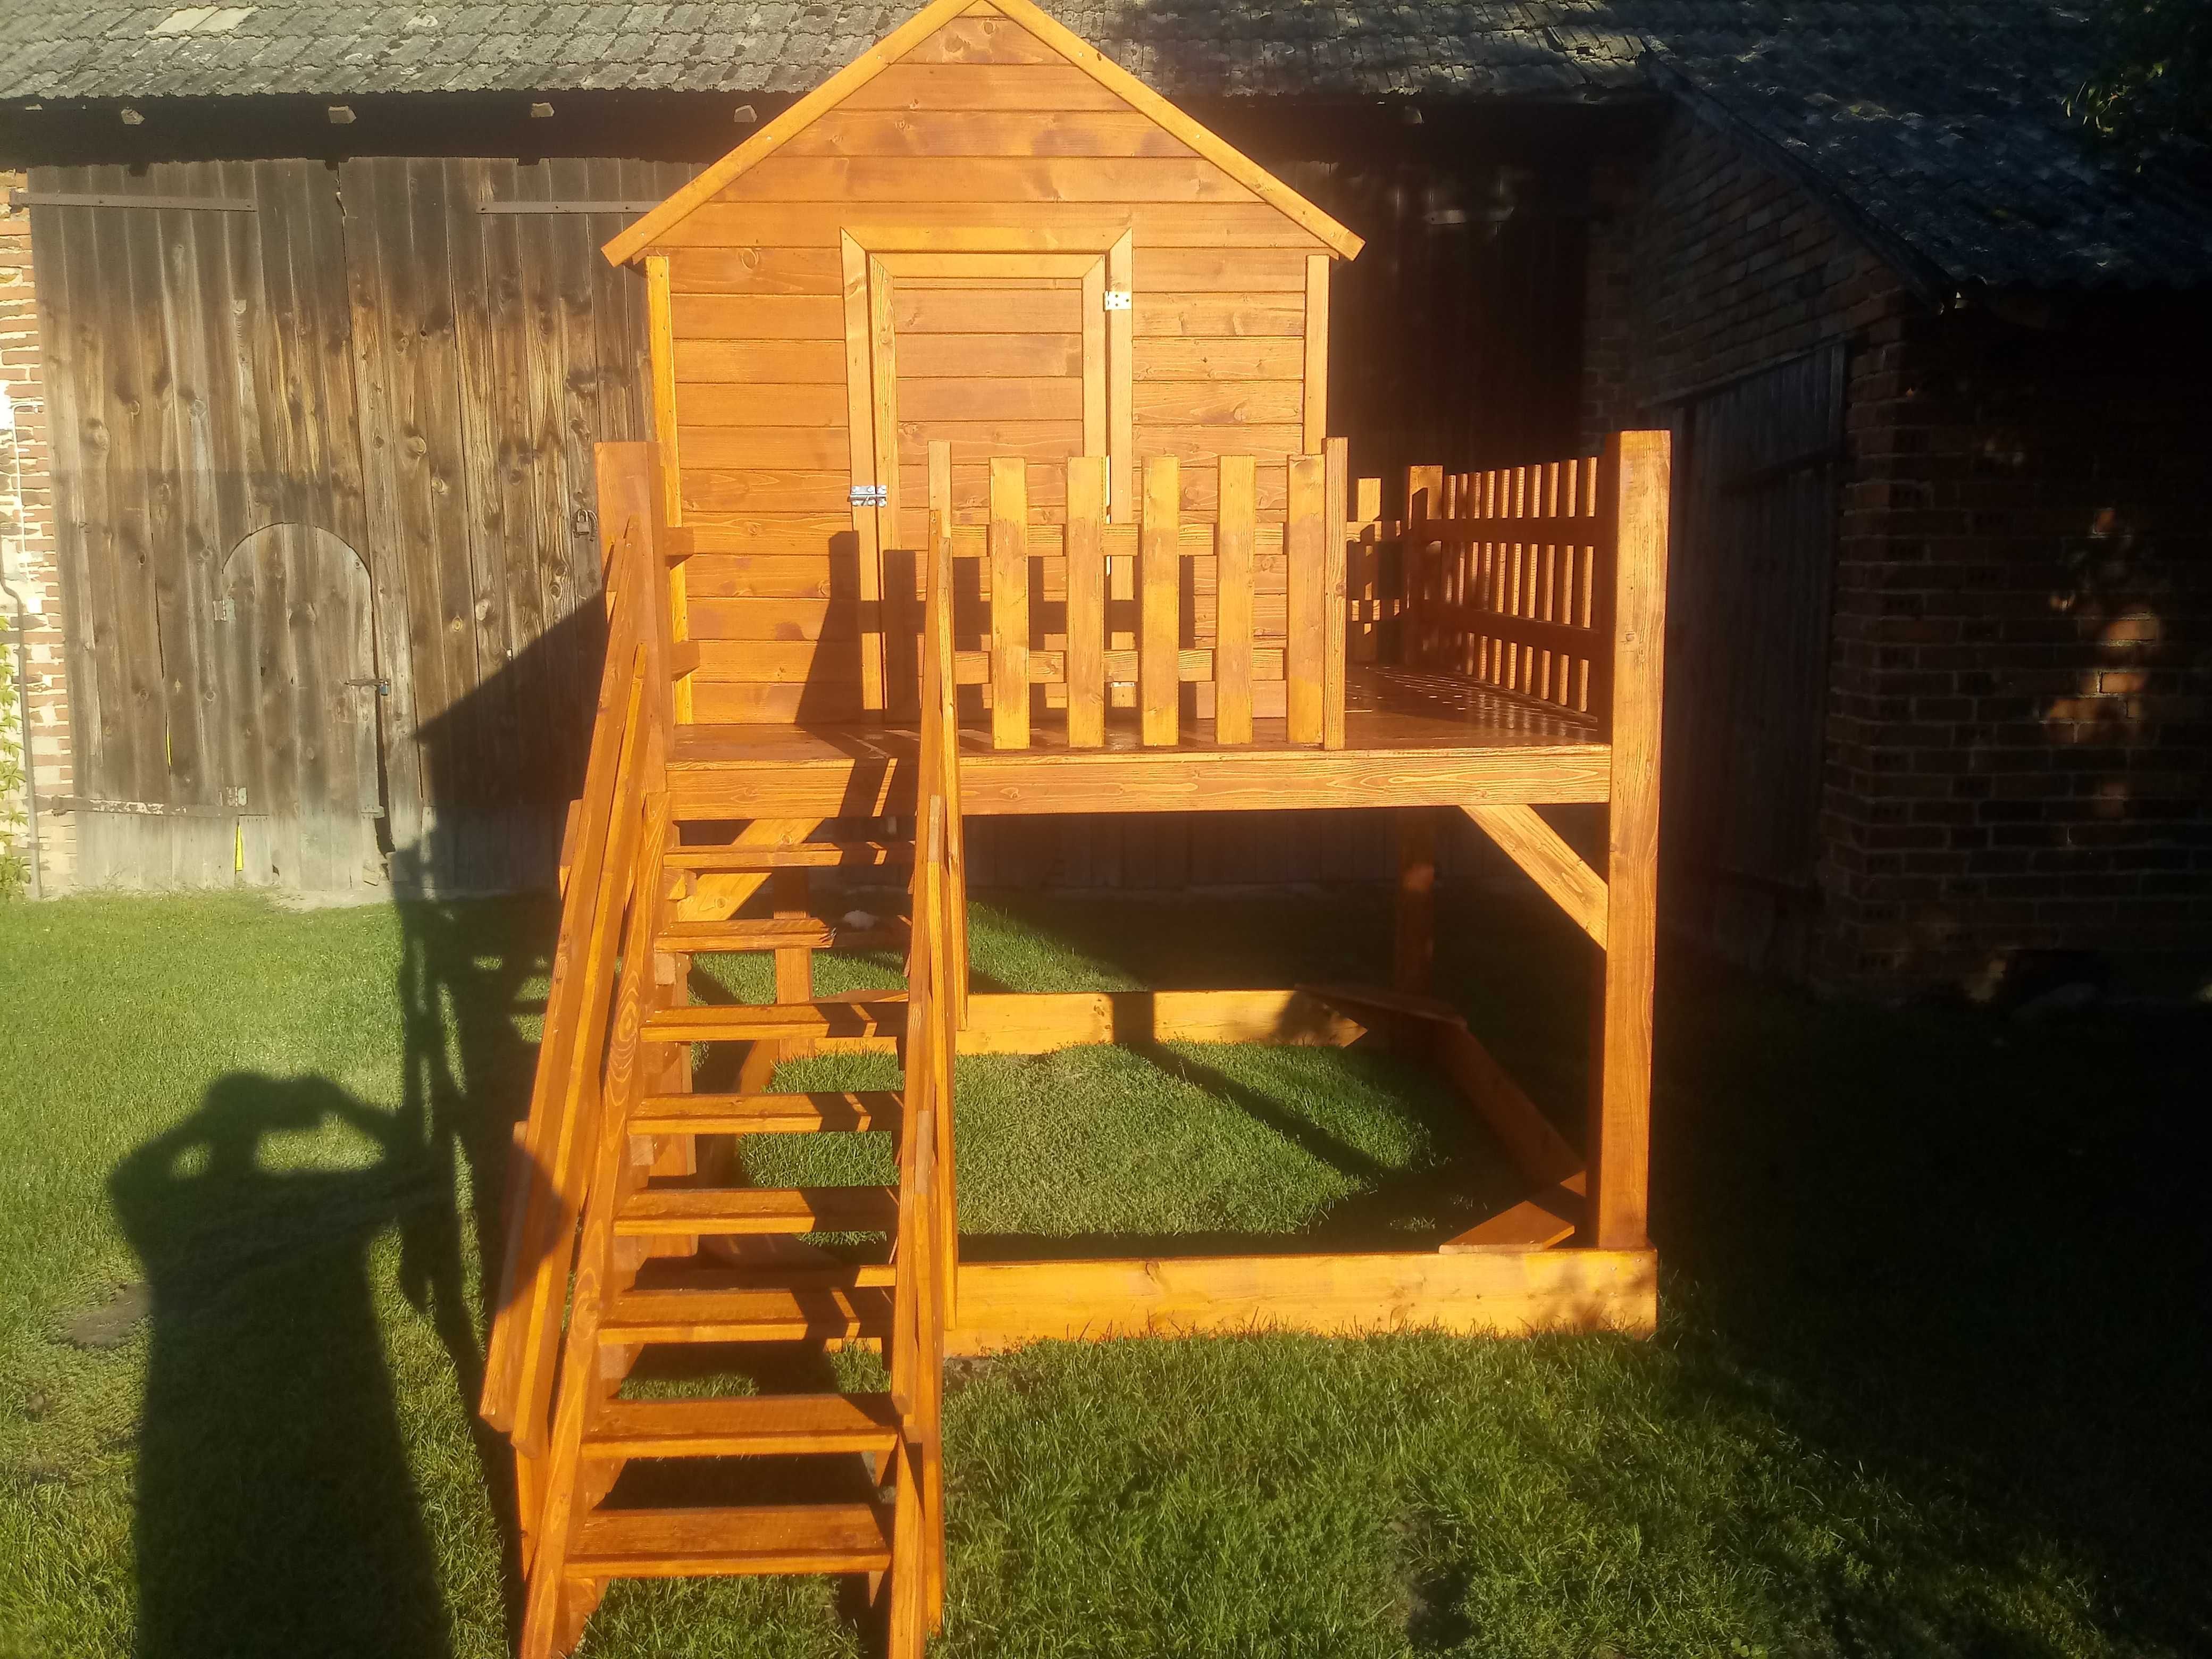 Drewniany domek dla dzieći